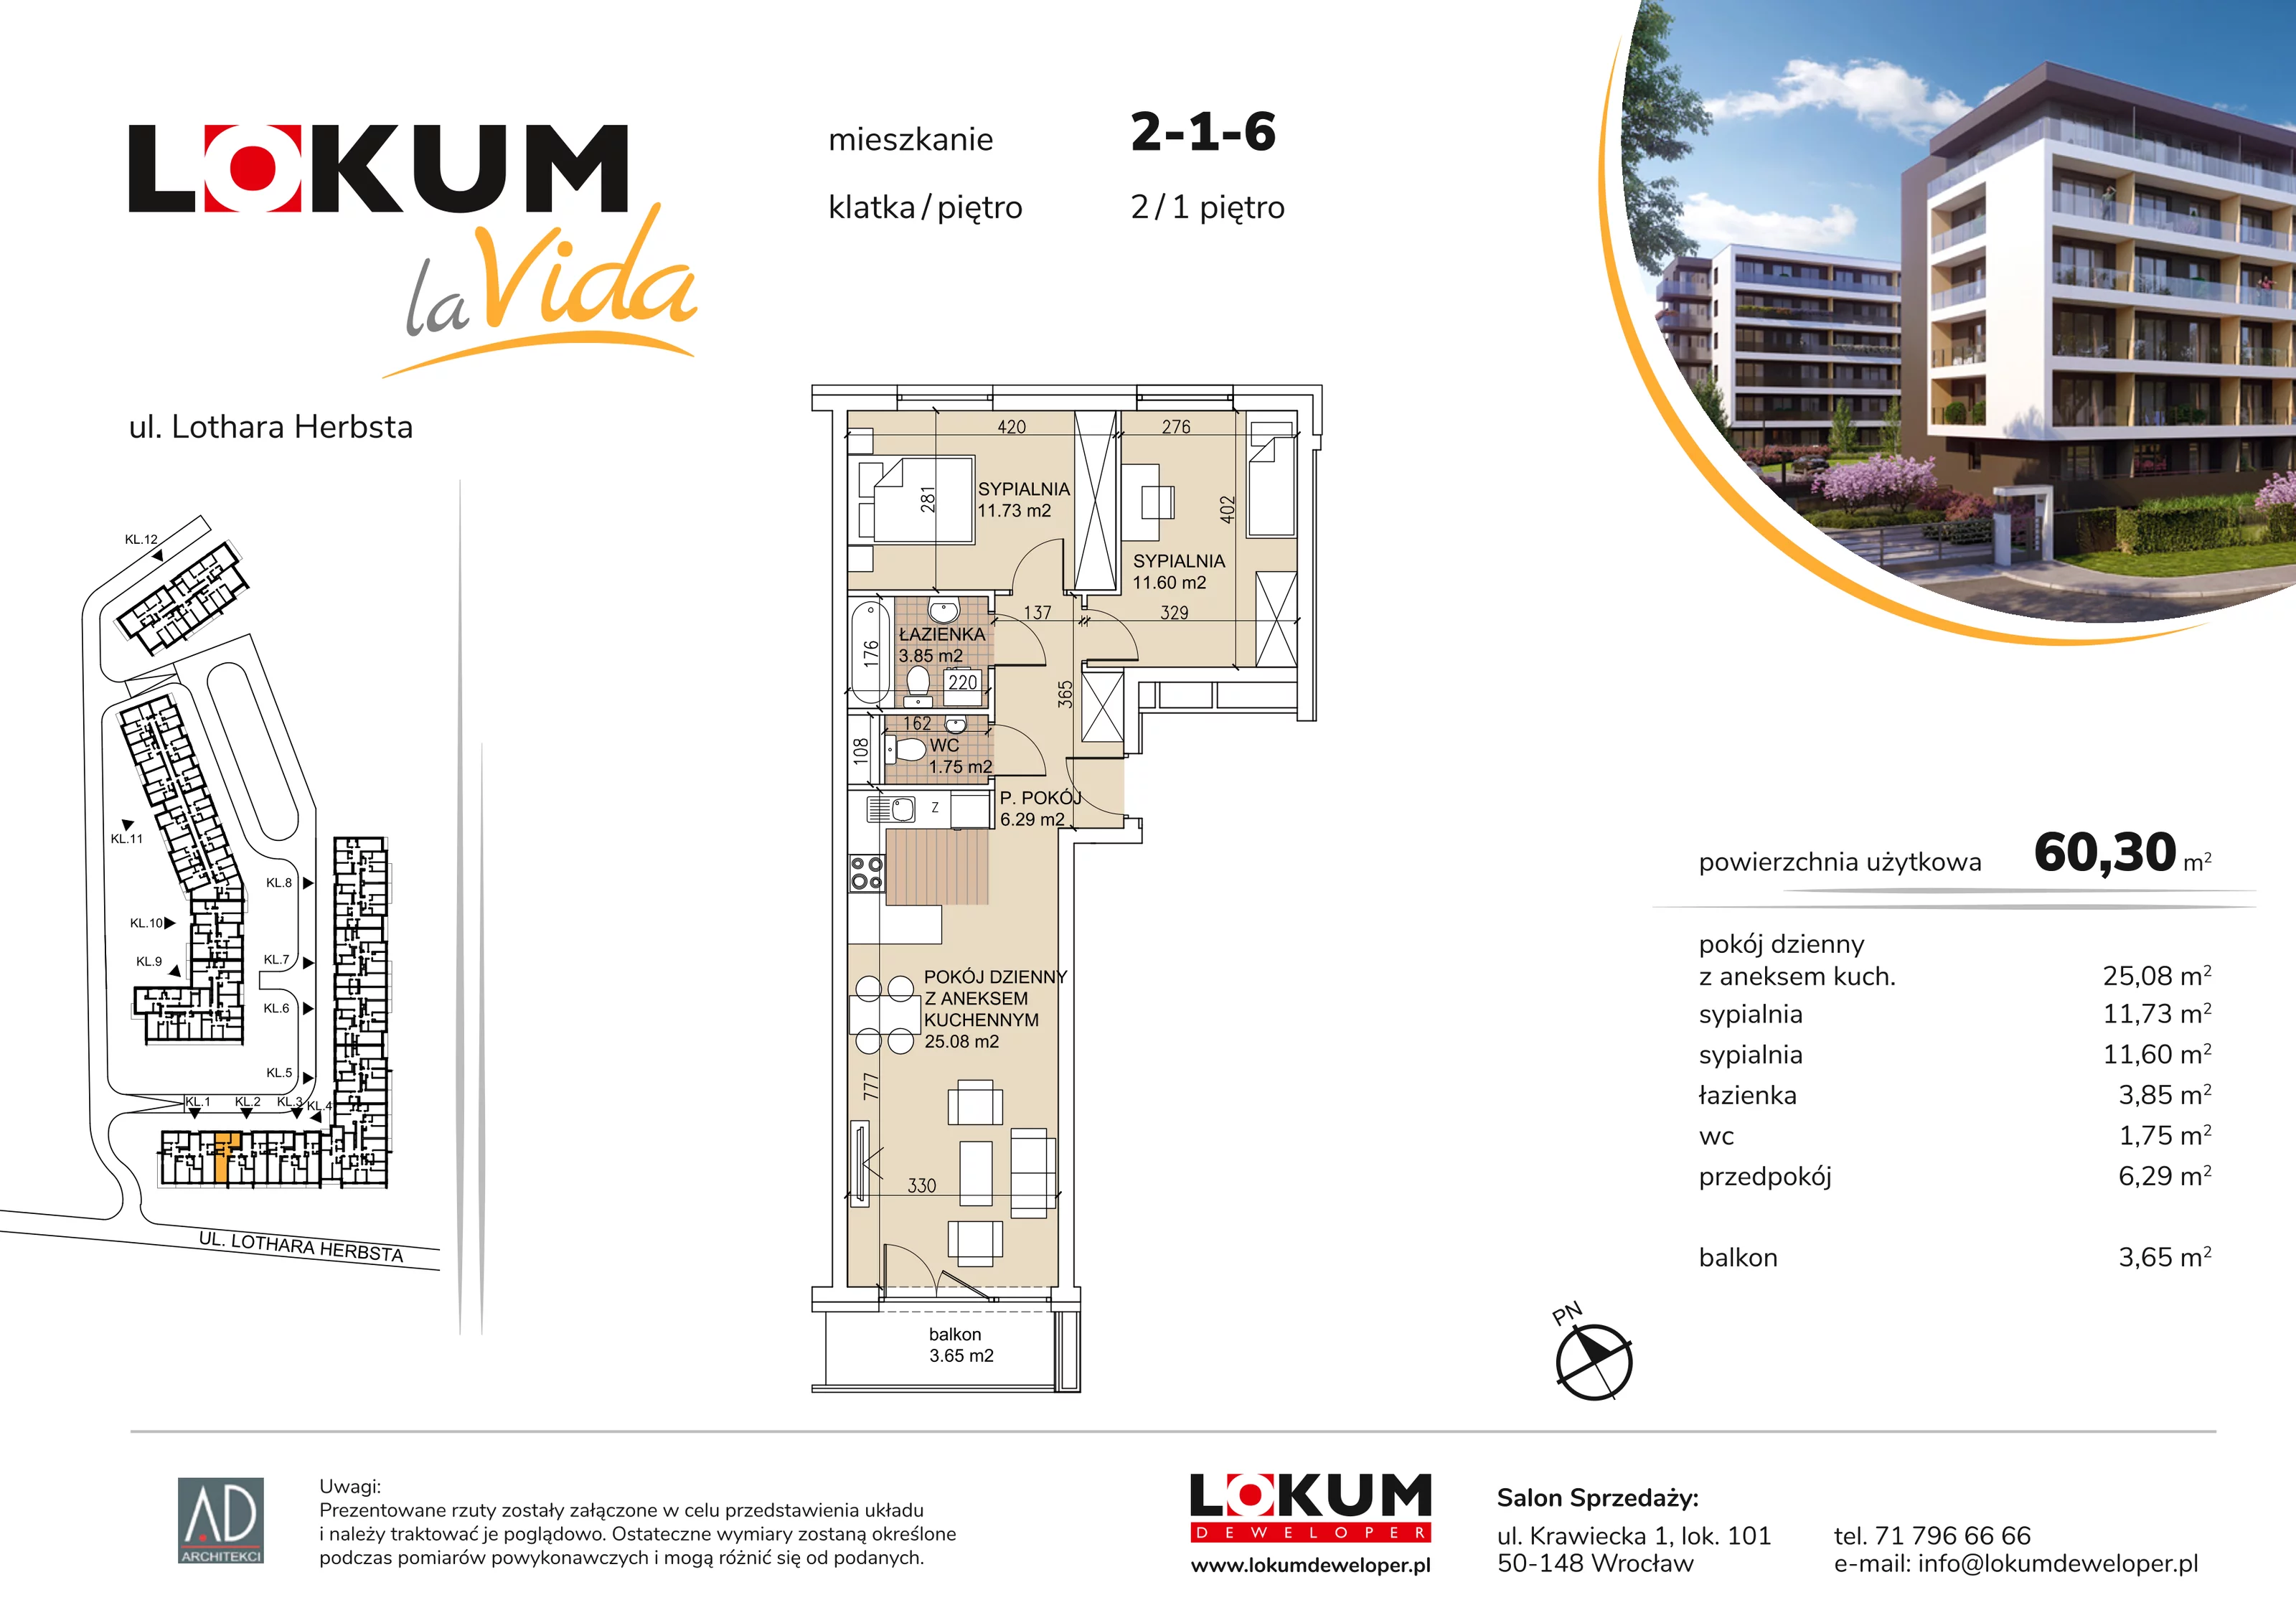 Mieszkanie 60,30 m², piętro 1, oferta nr 2-1-6, Lokum la Vida, Wrocław, Sołtysowice, ul. Lothara Herbsta